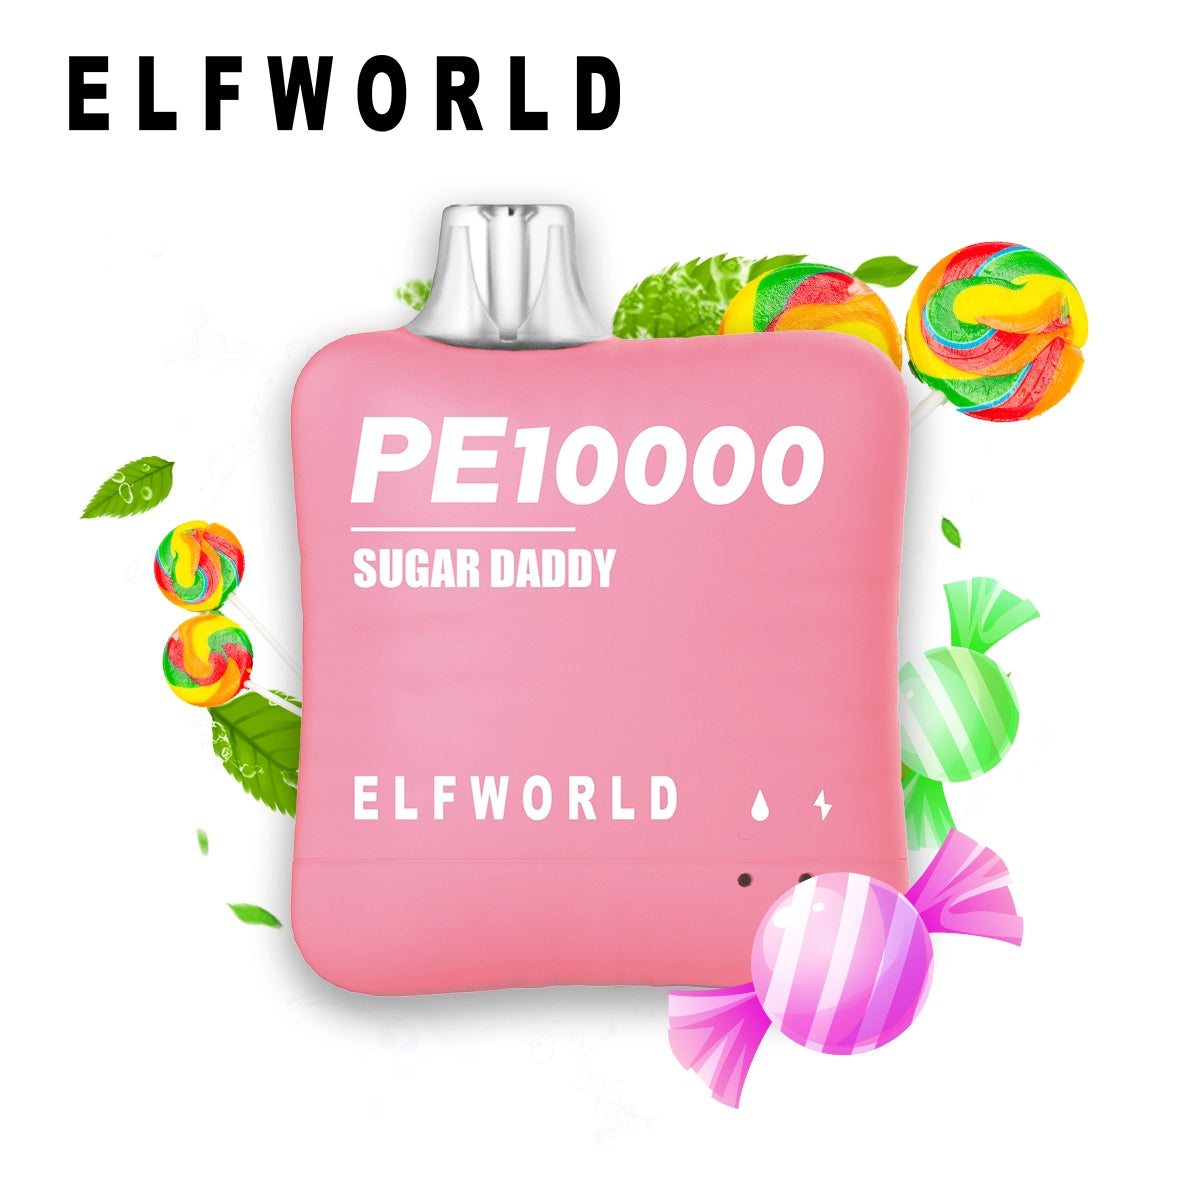 Elfworld PE10000 SUGAR DADDY